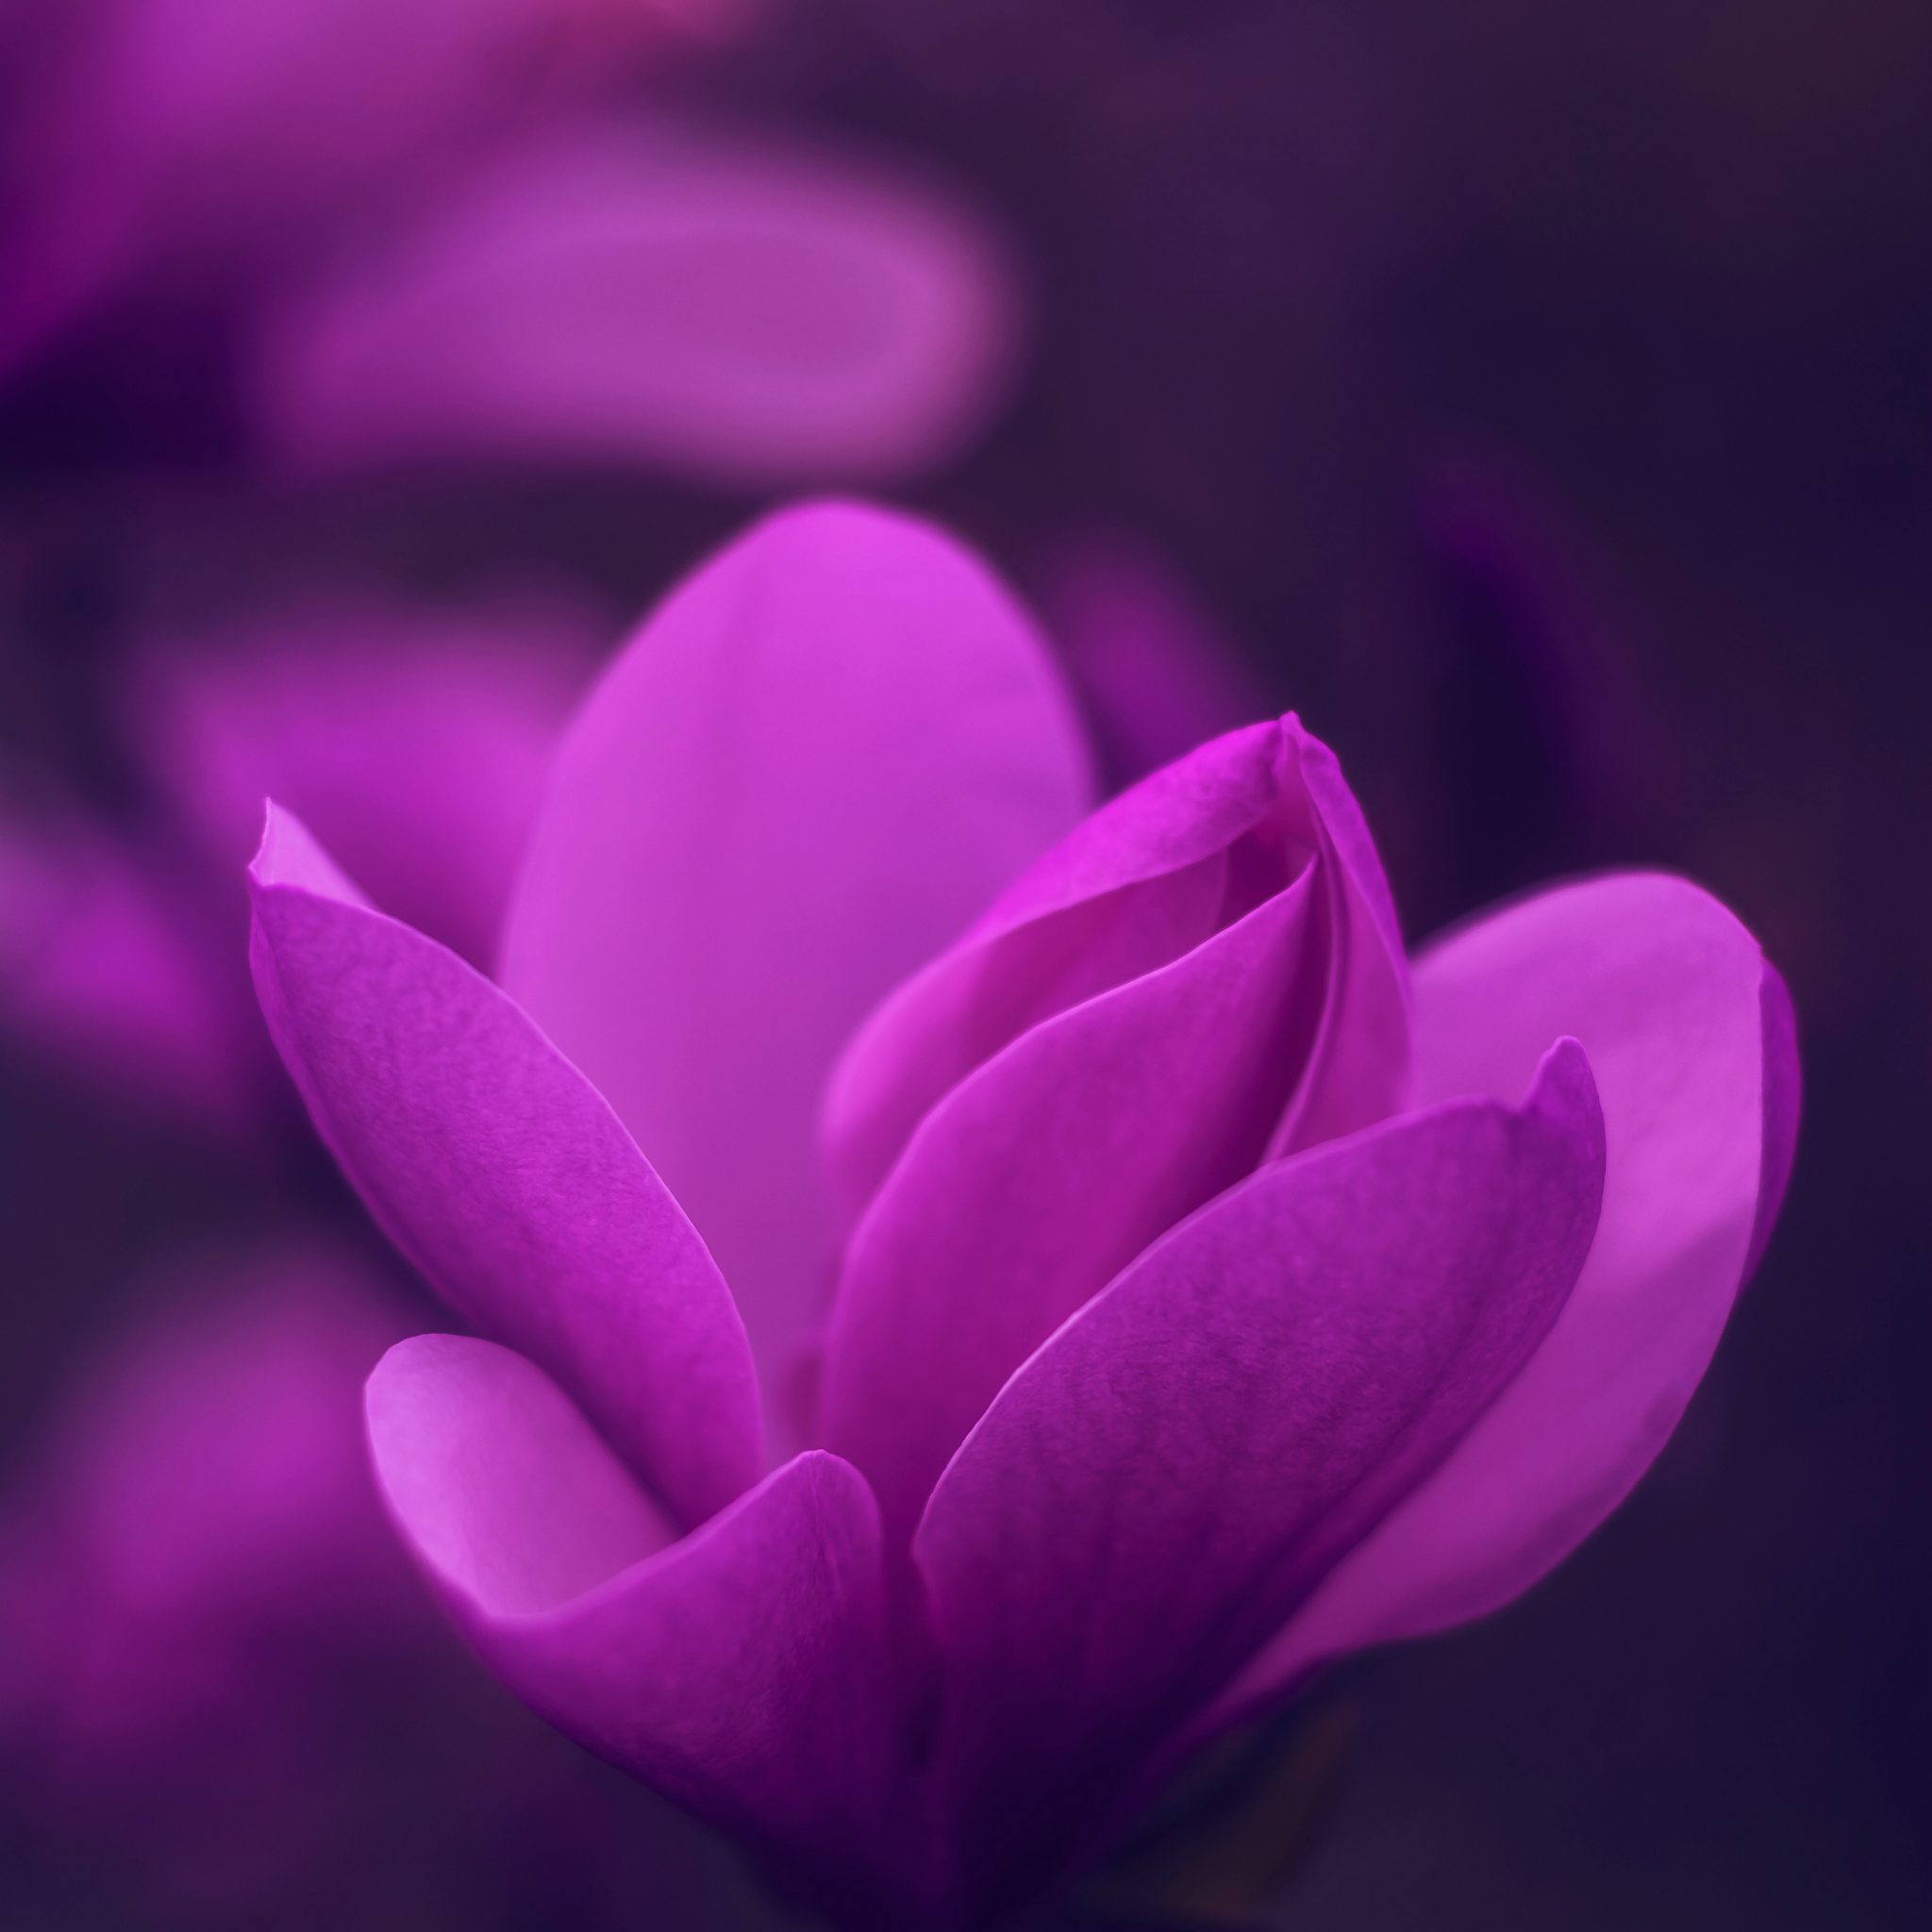 2048x2048 wallpapers iPad retina Purple Bloom Blossom Petaled Flower iPad Wallpaper 2048x2048 pixels resolution